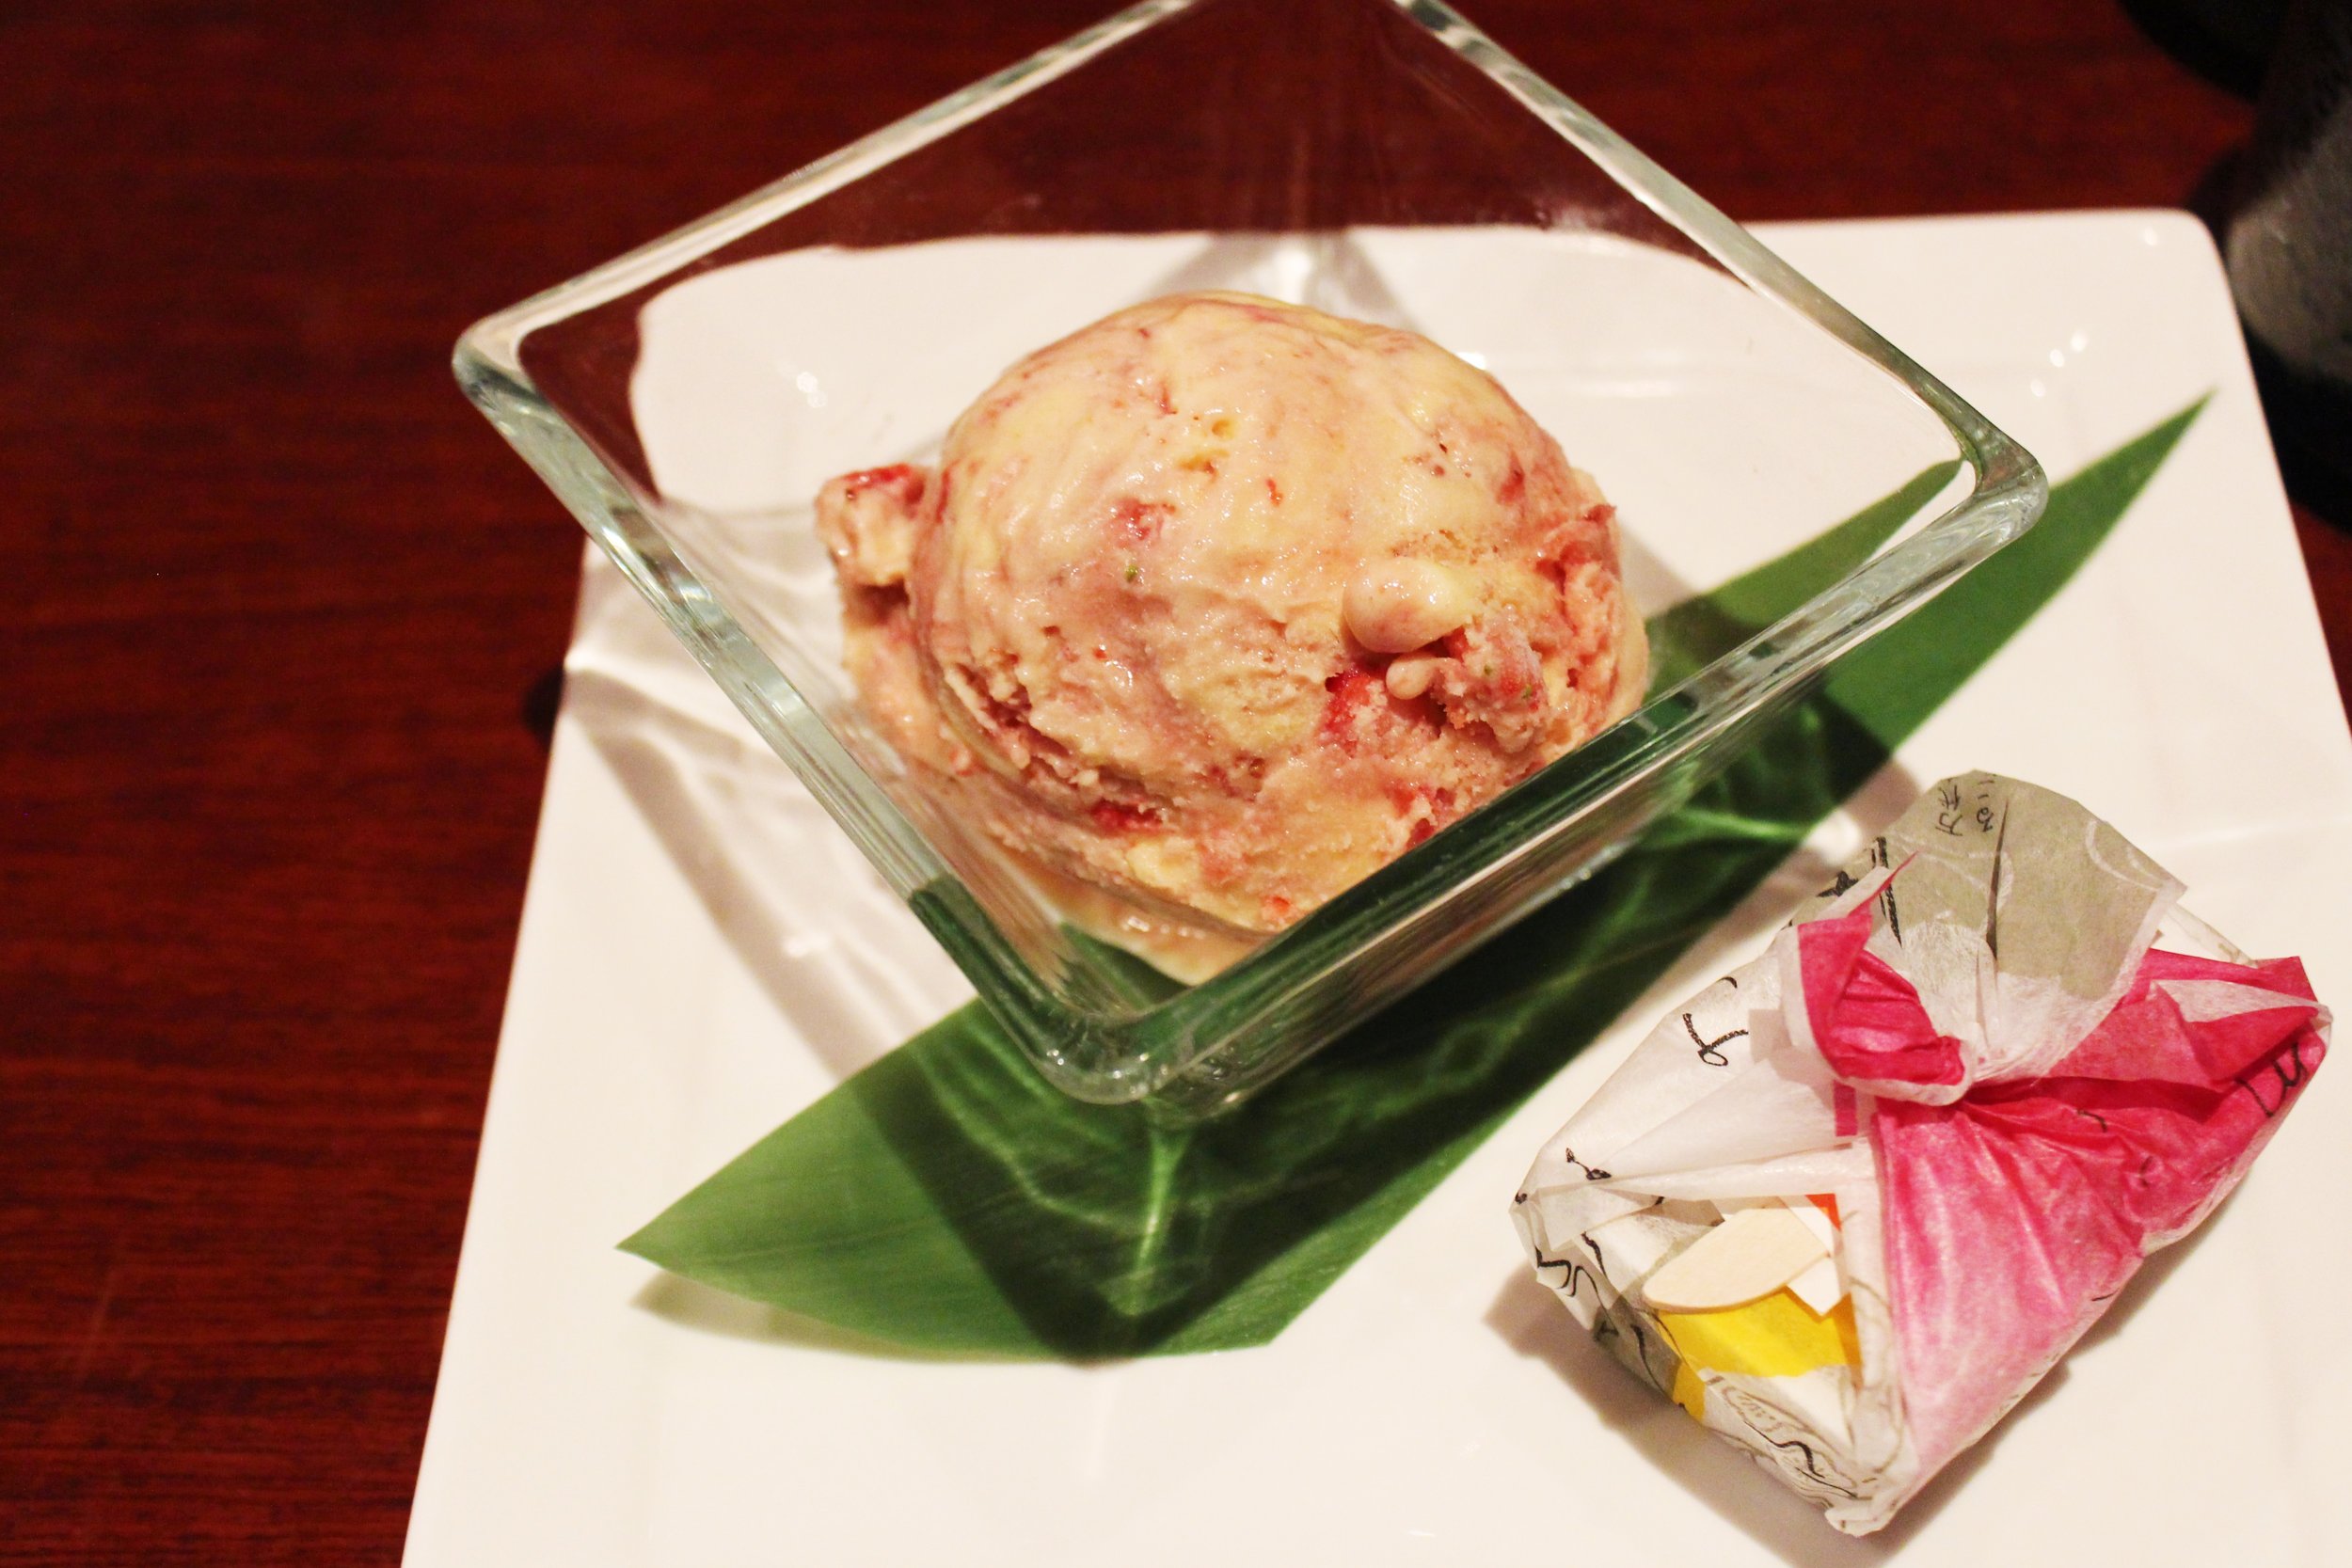 Fukuoka Mochi Cake with "Amaou" Strawberry Ice Cream 